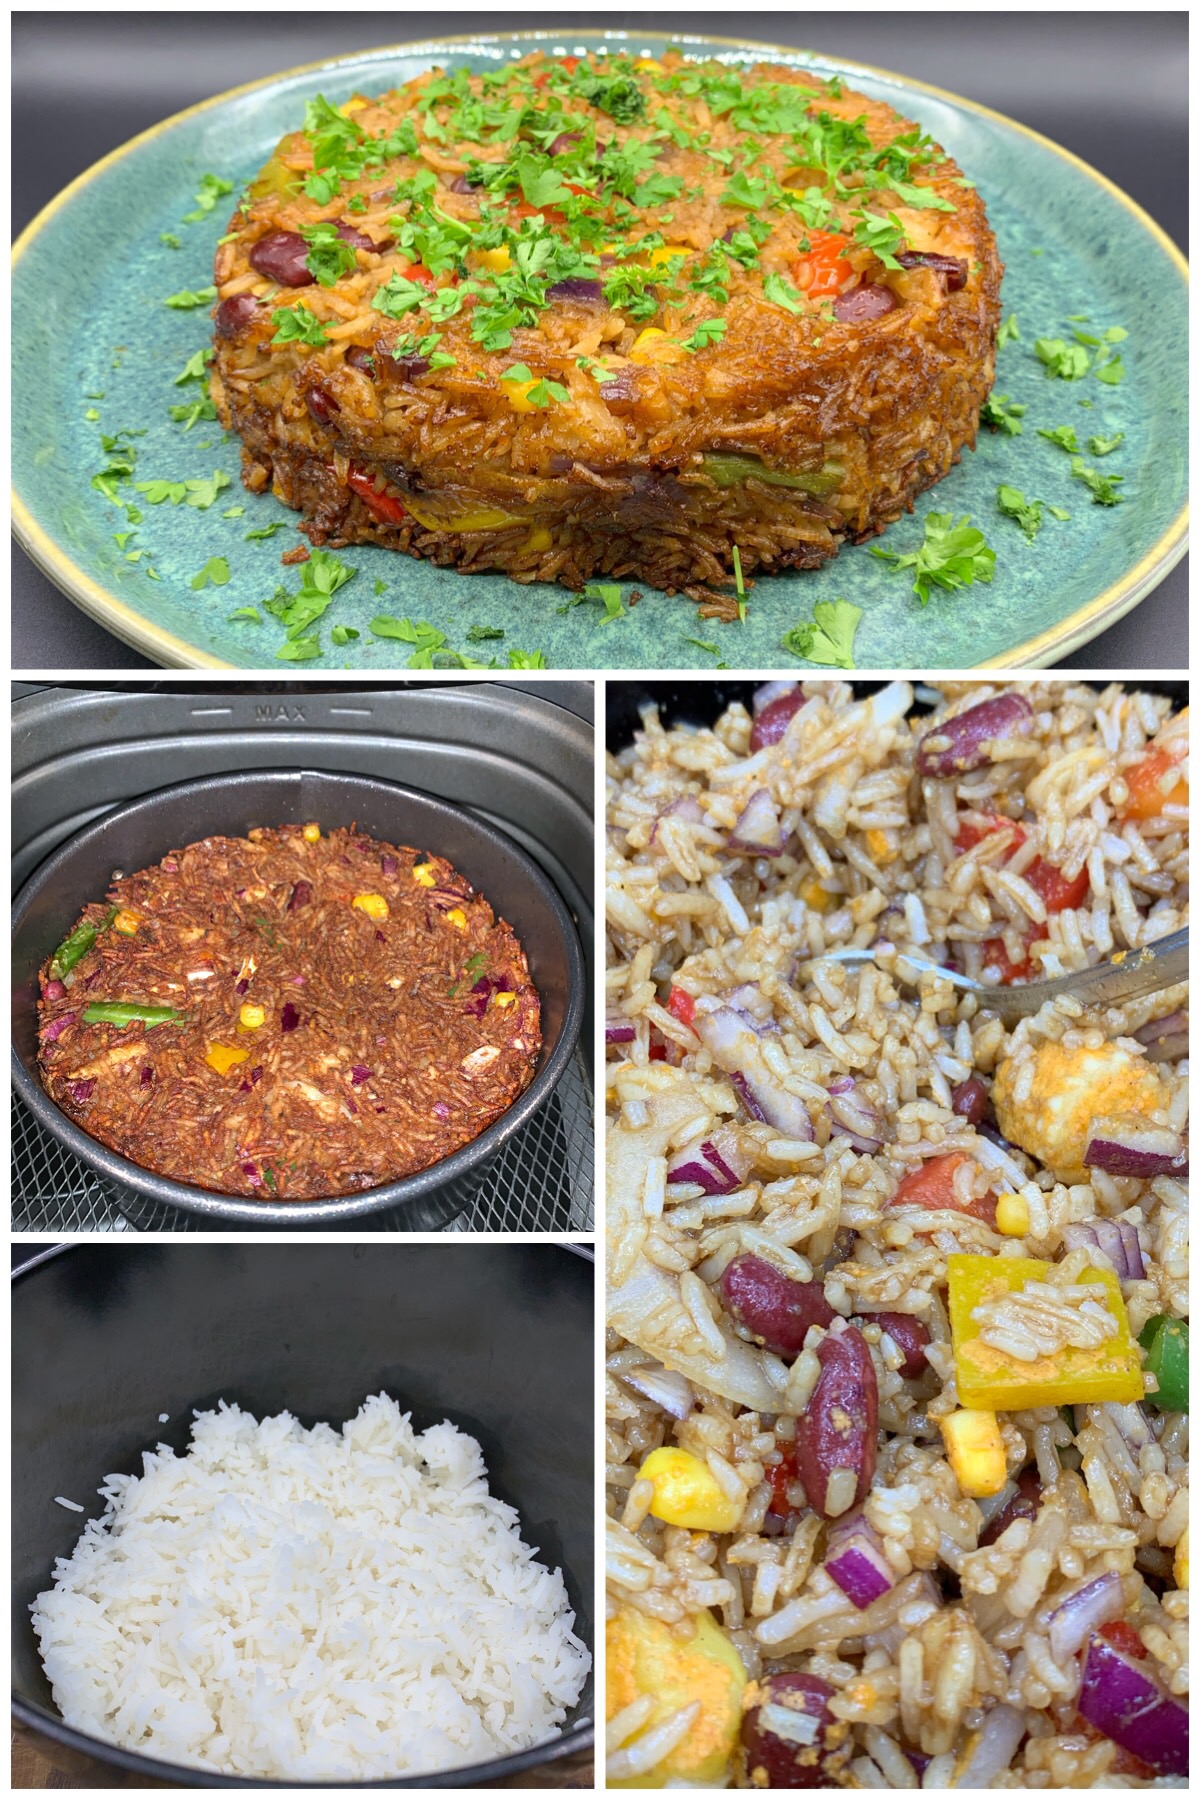 Fried rice – nemme stegte ris med grønt